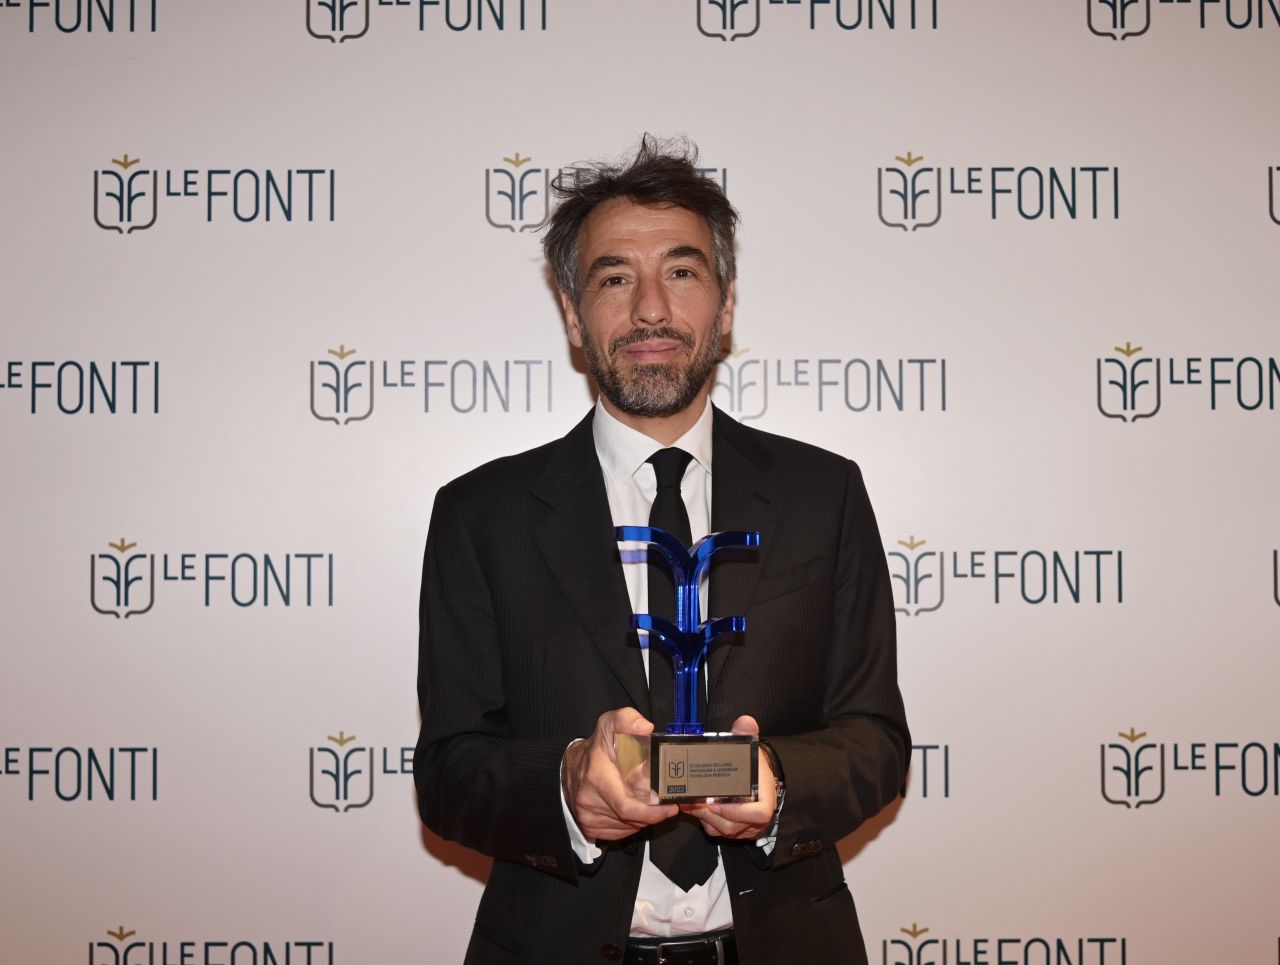 AutoStore premiata “Excellence of the Year” durante la serata Le Fonti Awards